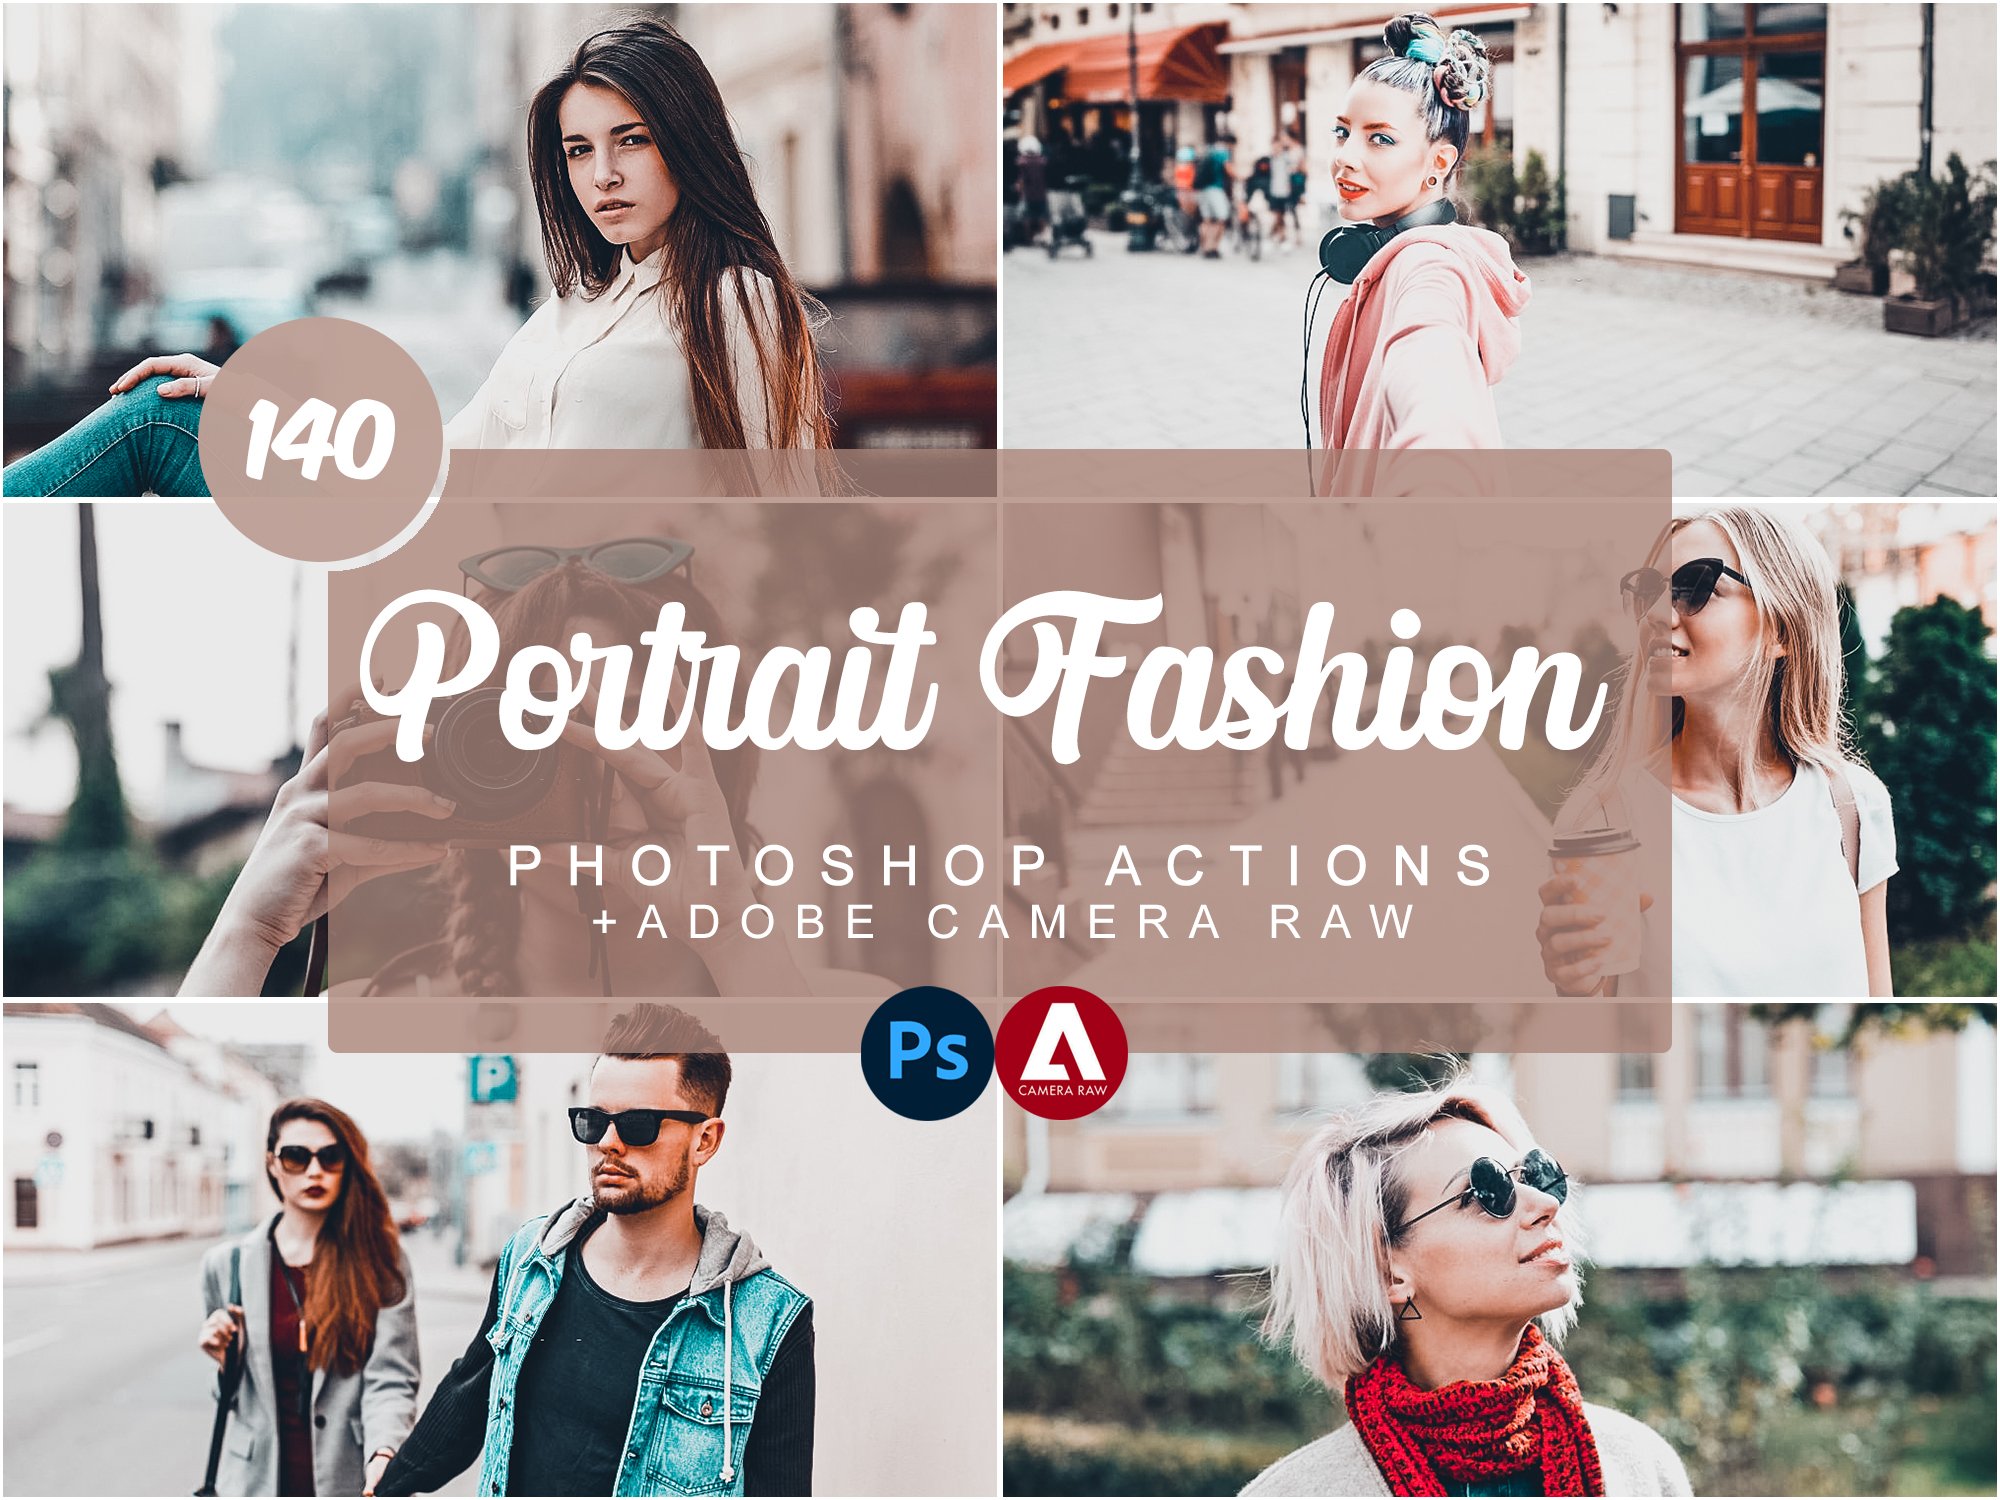 Portrait Fashion Photoshop Actionscover image.